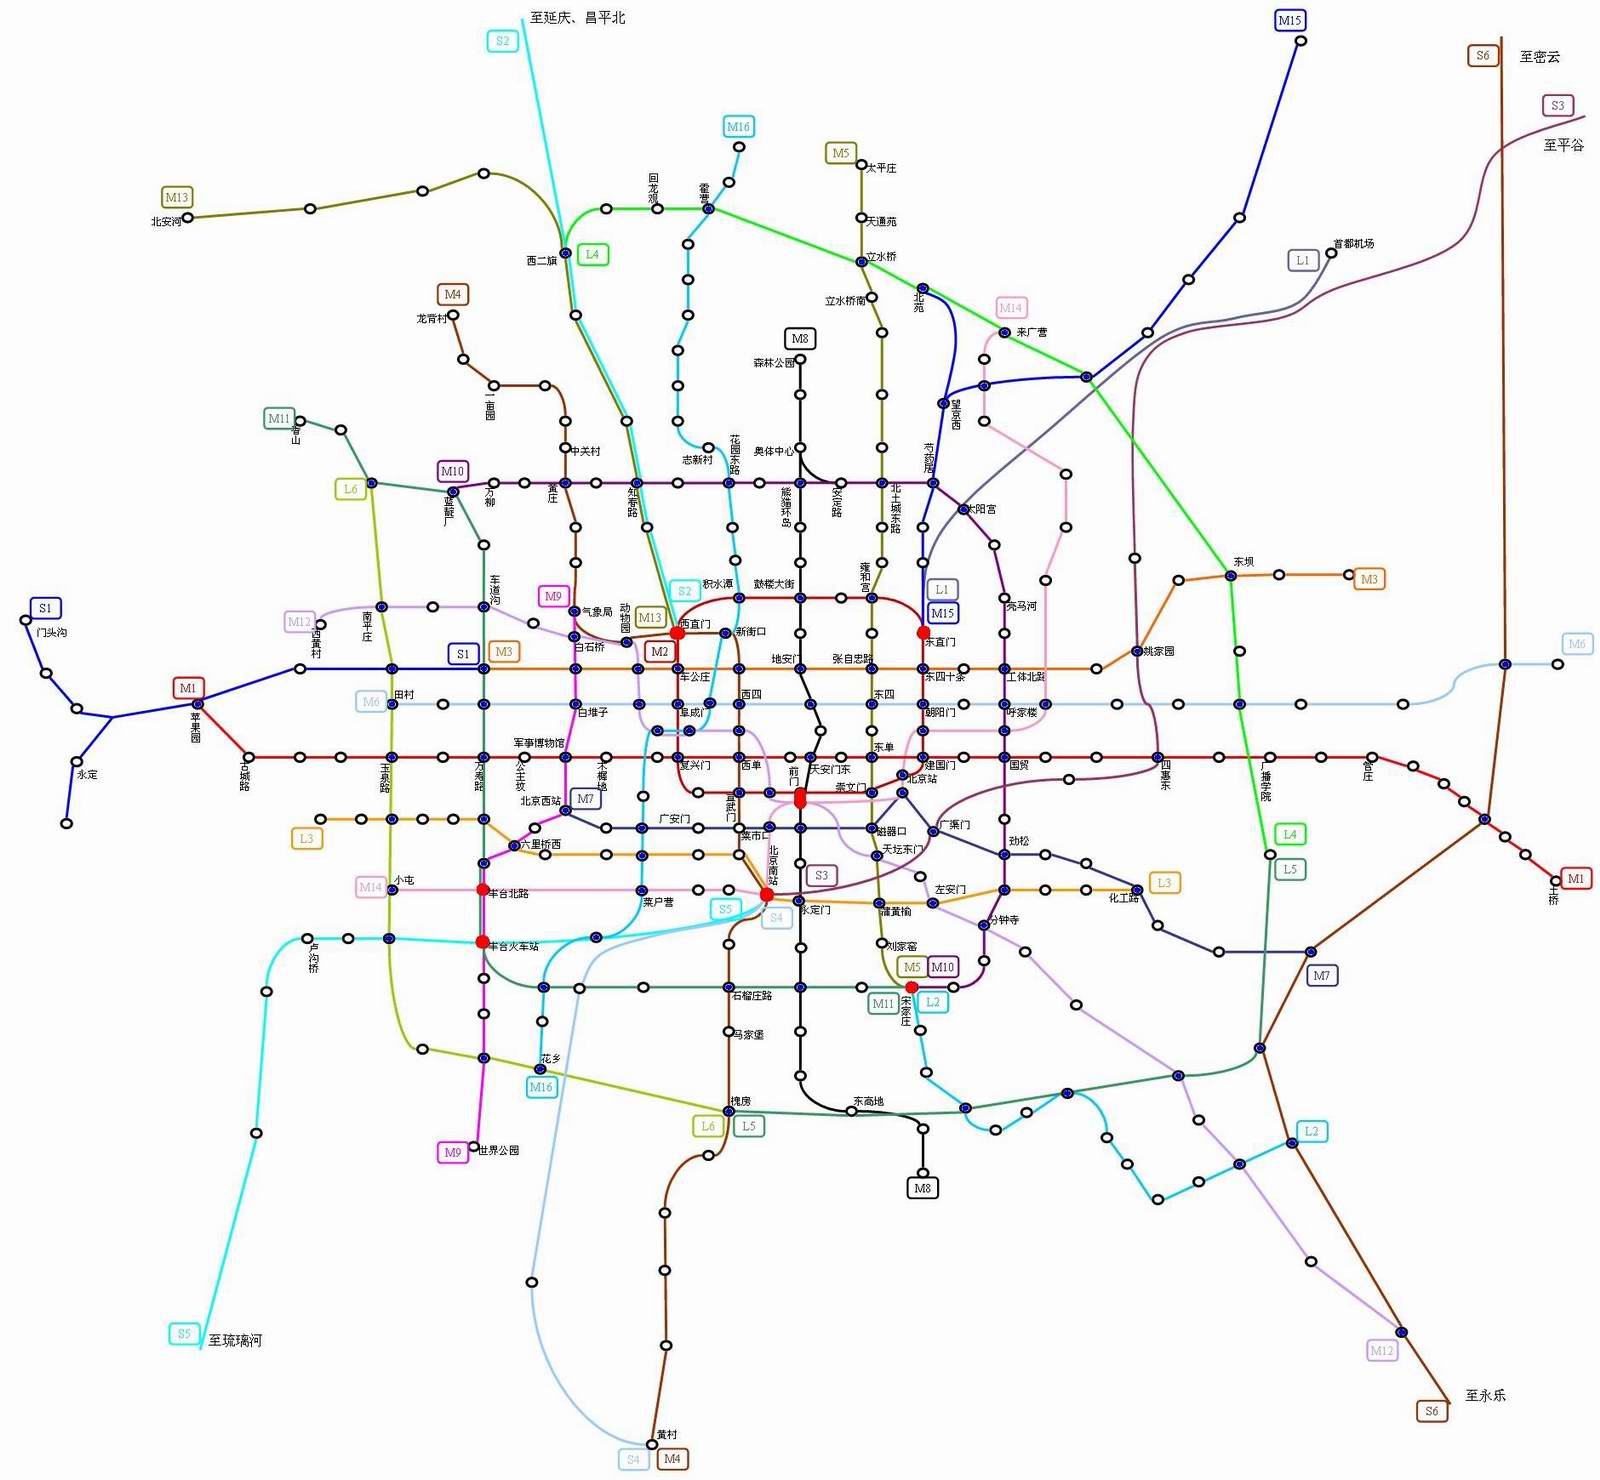 北京地铁线路图高清图 最新北京地铁线路图高清晰 - 水密码123